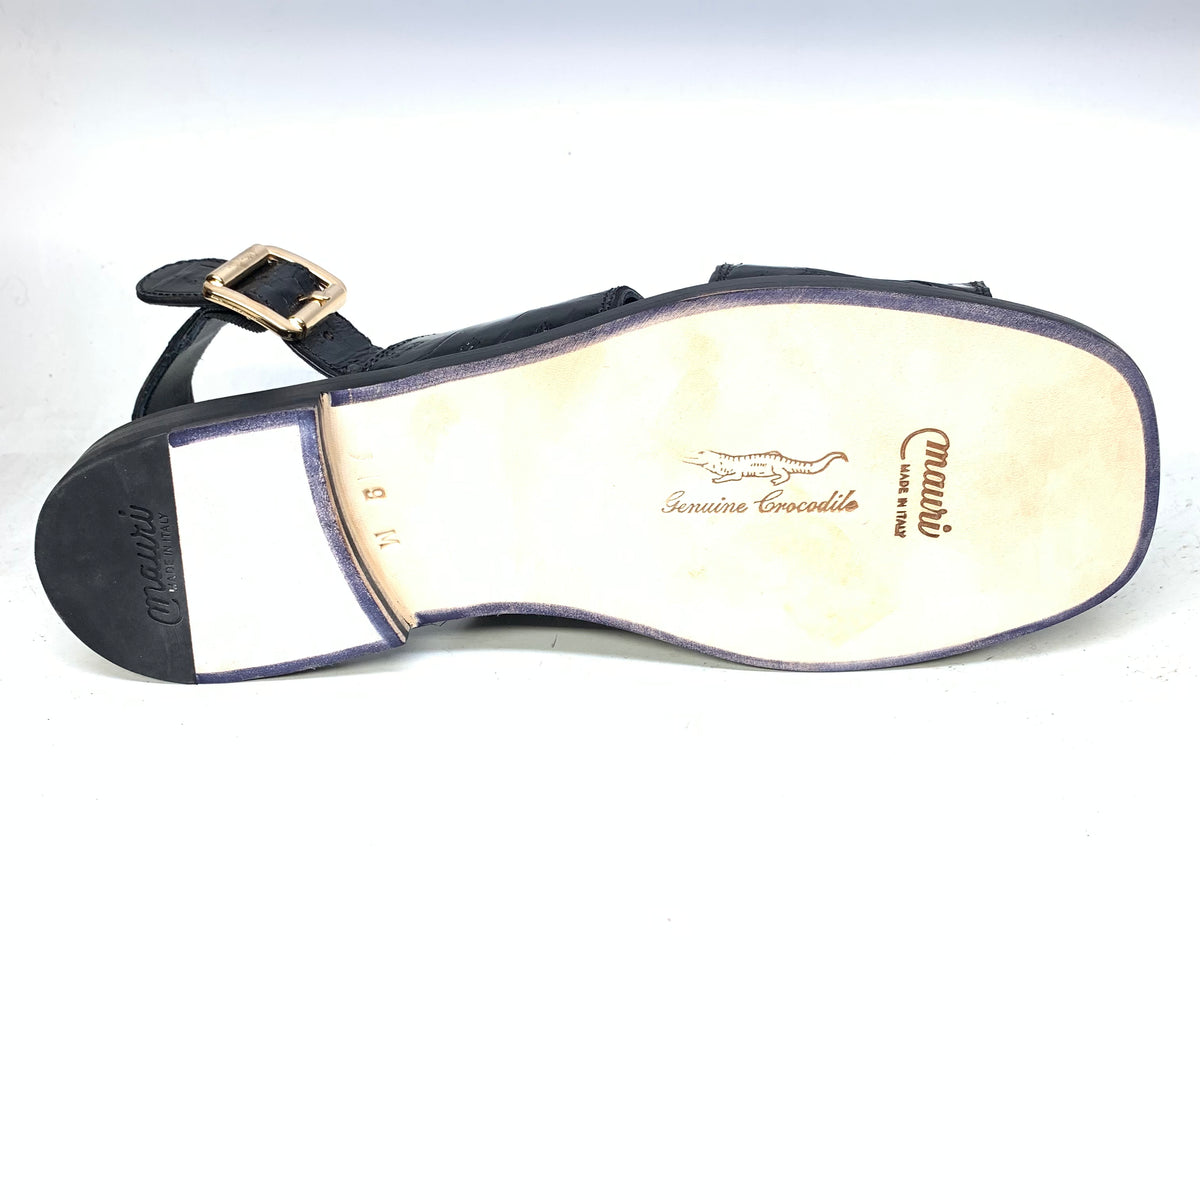 Mauri 5071 Black Gold Buckle Baby Crocodile Sandals - Dudes Boutique